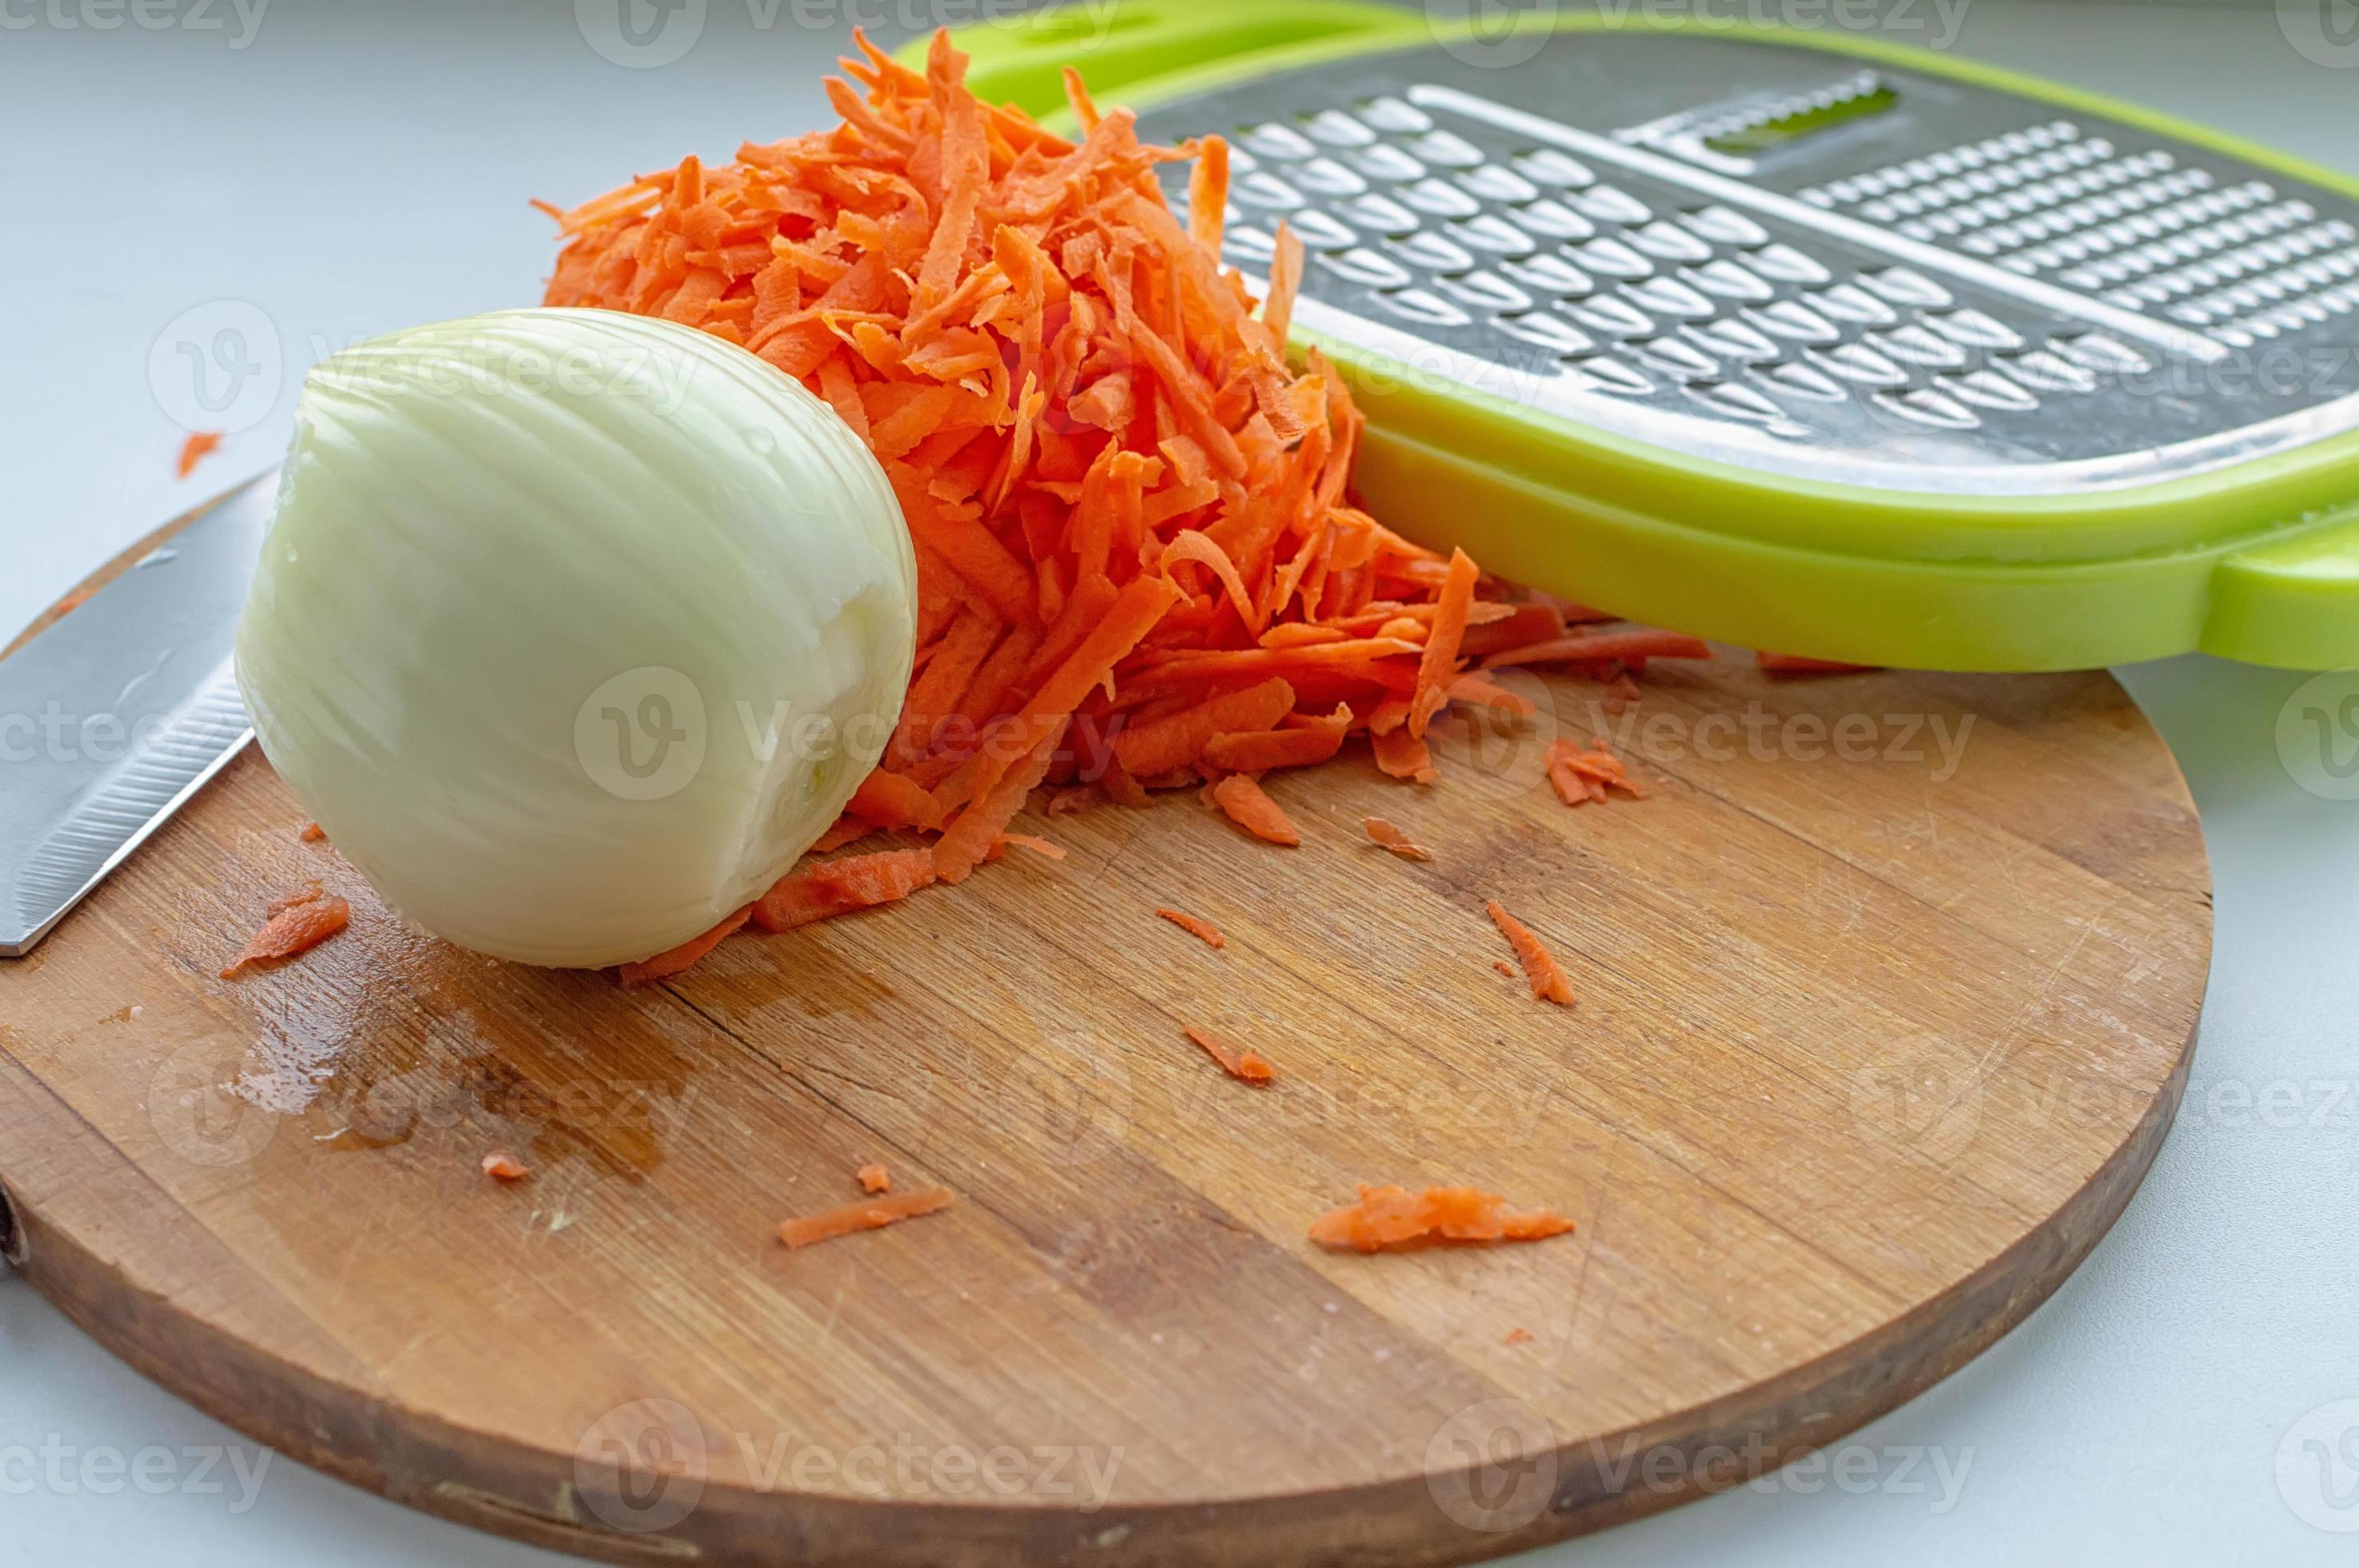 cipolle sbucciate, carote grattugiate e una grattugia su un